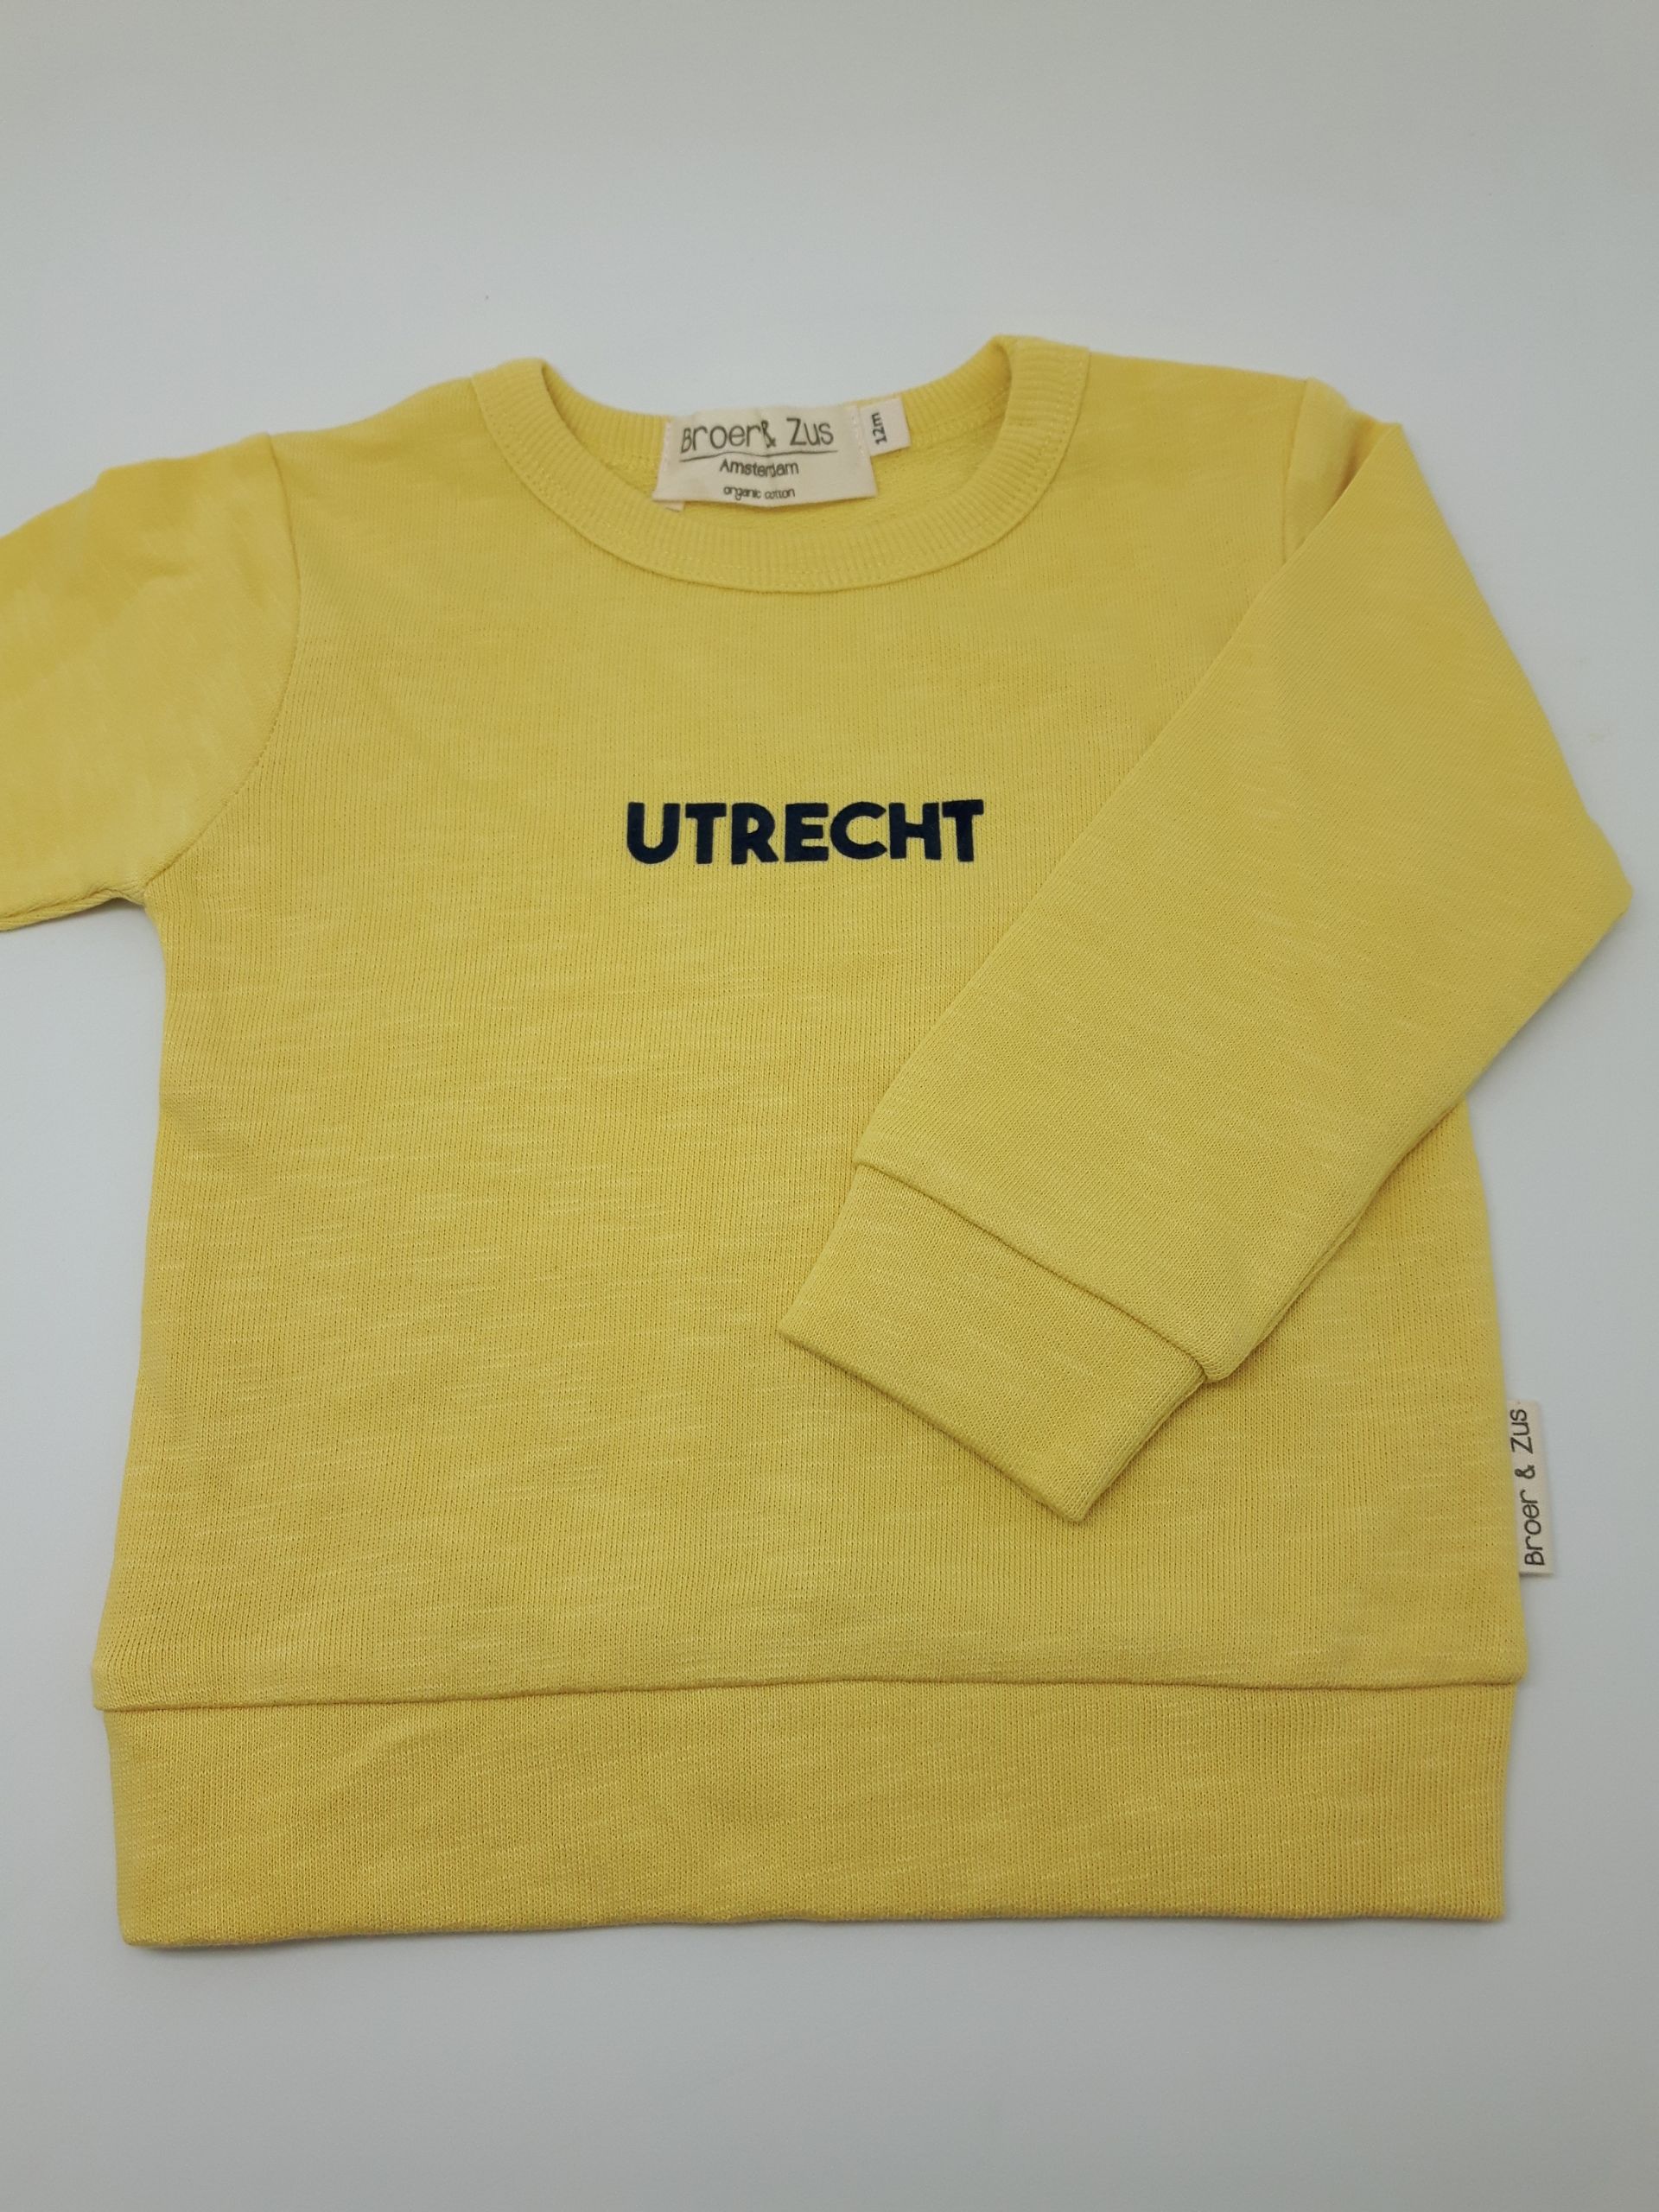 Sweater Utrecht Banana/navy 12 maanden